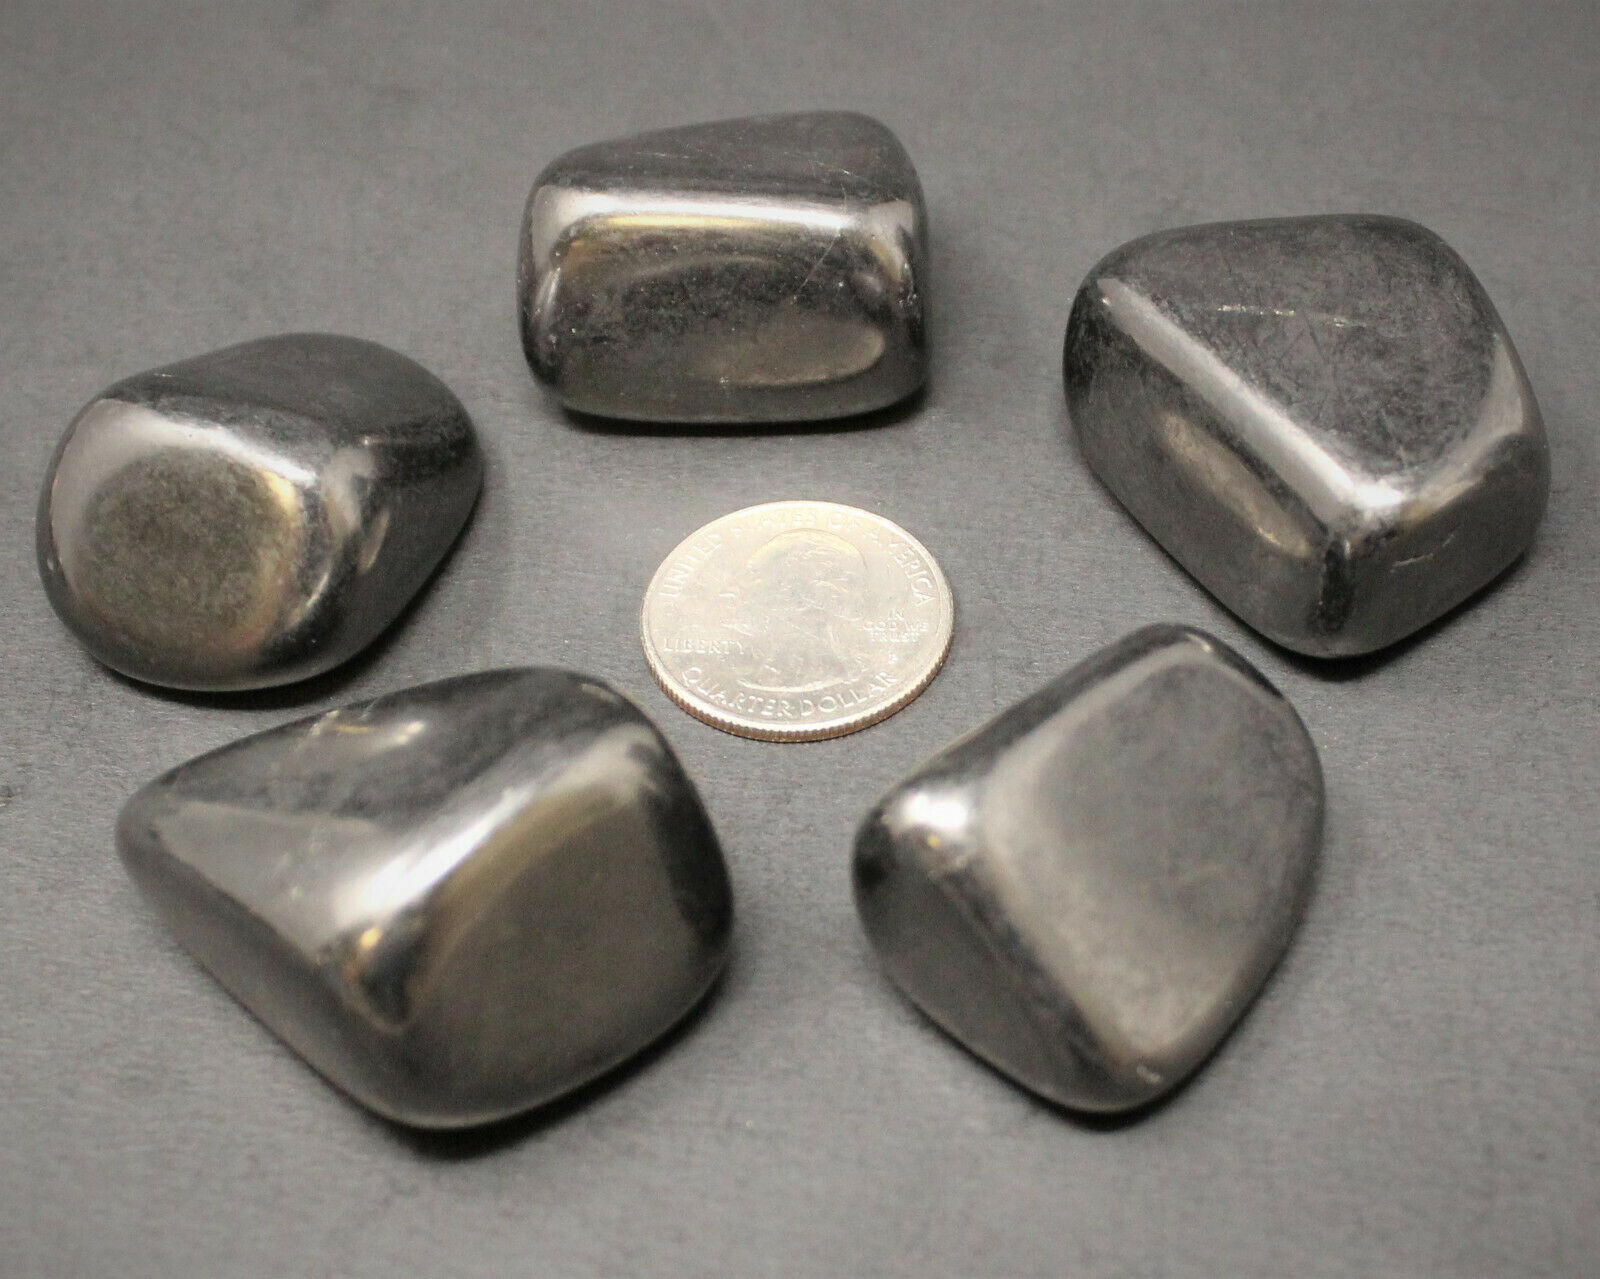 1 Shungite Specimen Tumbled Stone: LARGE (Crystal Healing Gemstone Reiki)